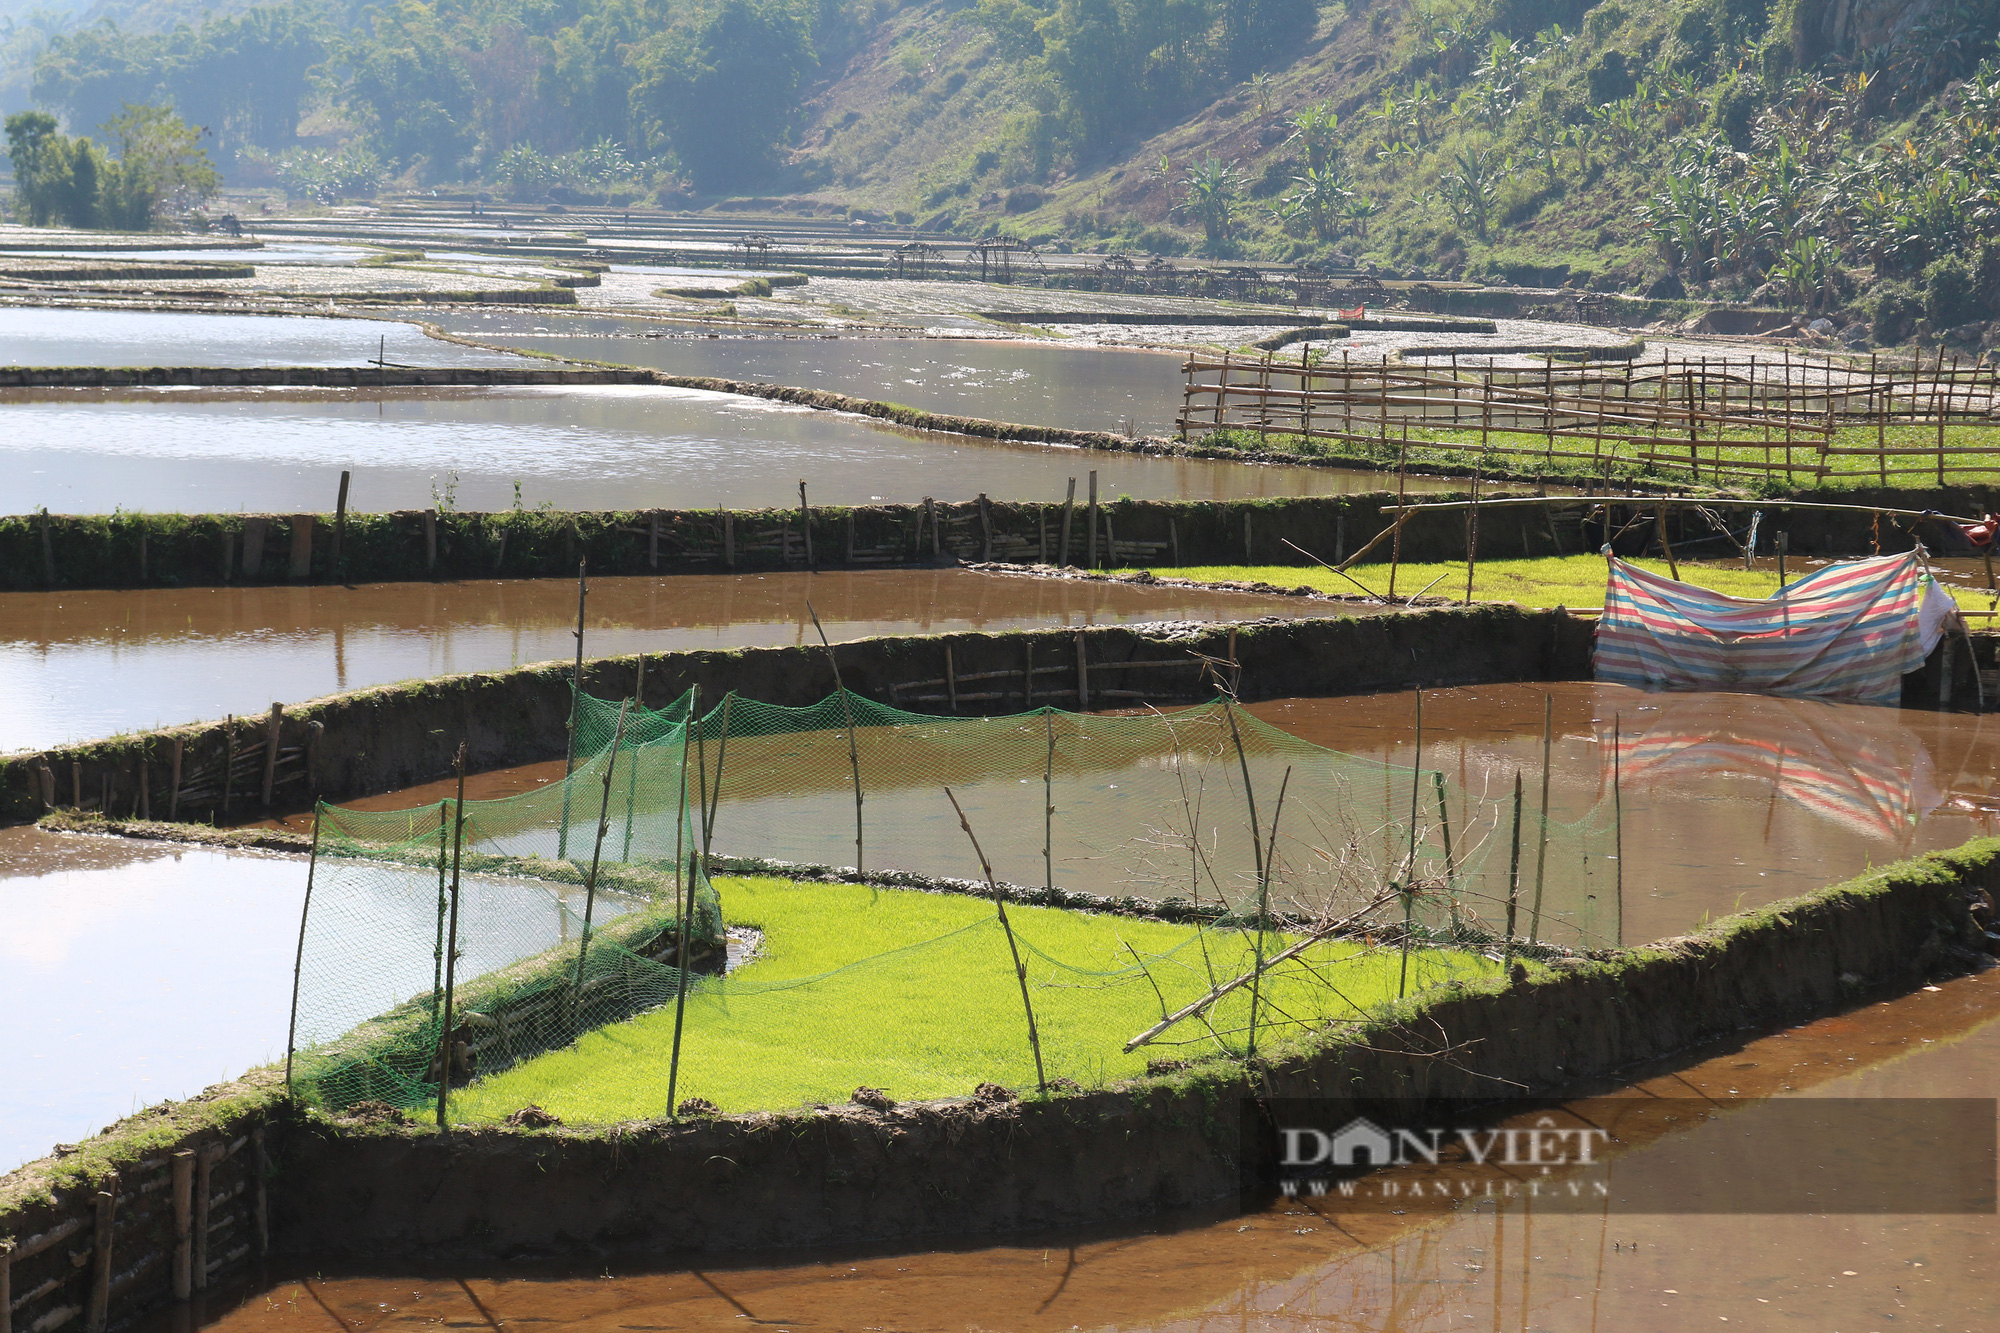 Chiếc cọn nước trị giá gần 4 triệu đồng hứa hẹn về một mùa vàng bội thu cho nông dân vùng cao Sơn La - Ảnh 8.